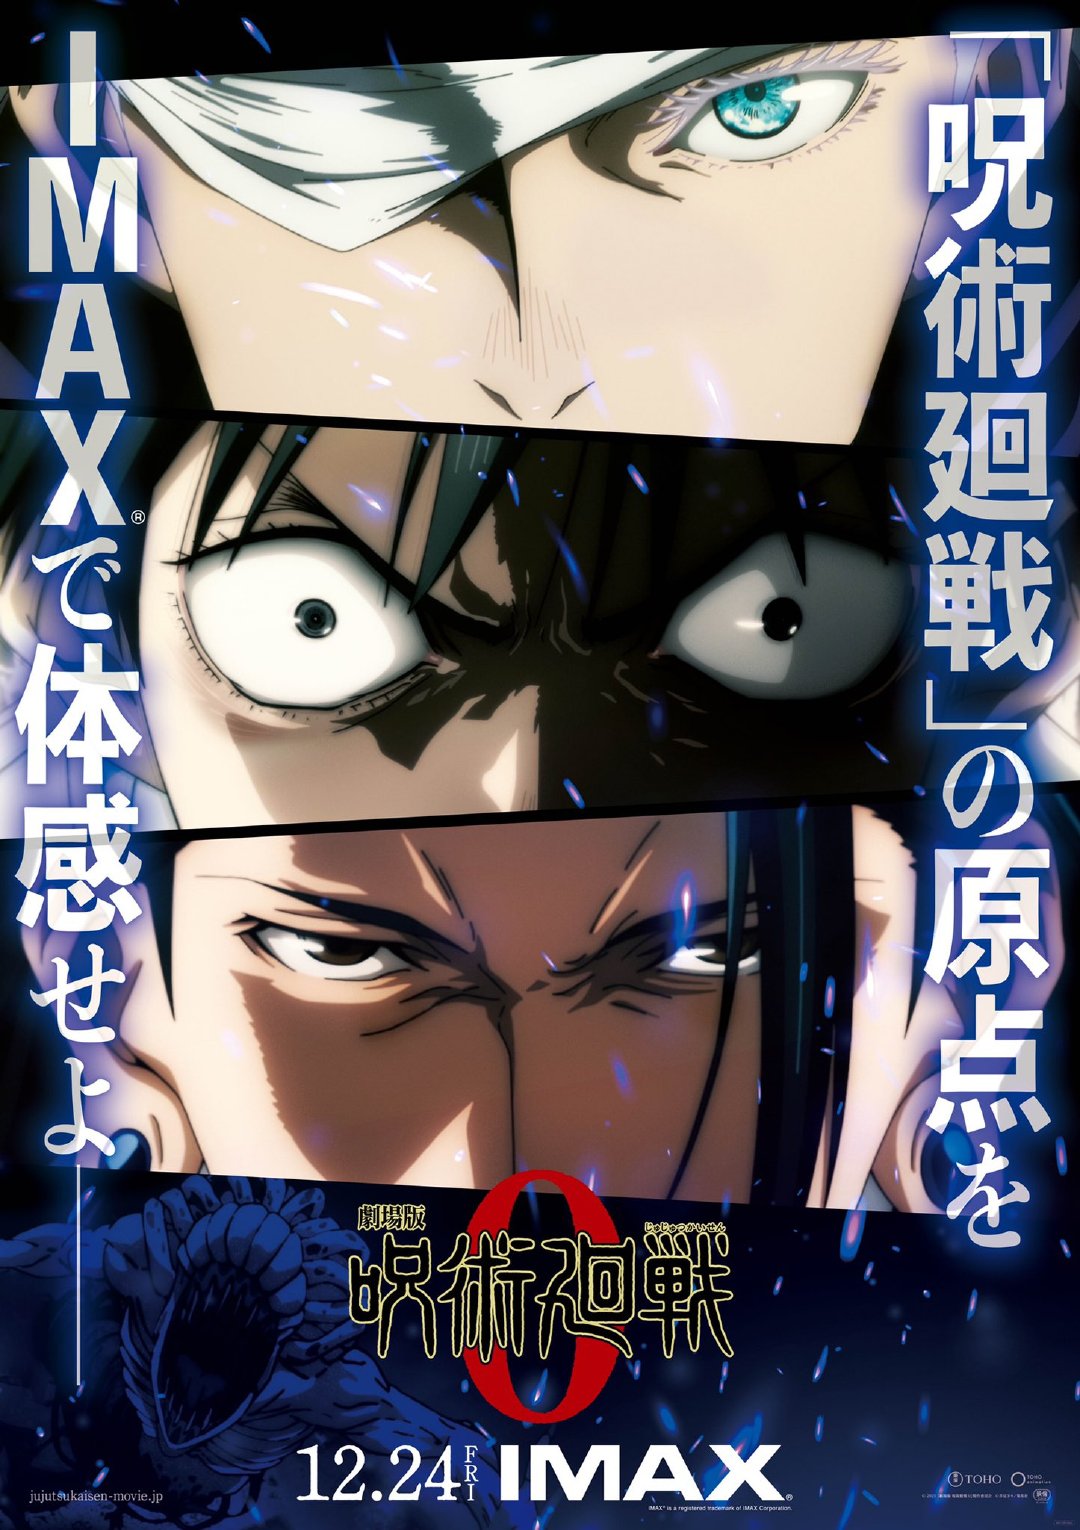 剧场版动画《咒术回战0》公布新海报，剧场版动画将于12月24日日本上映。